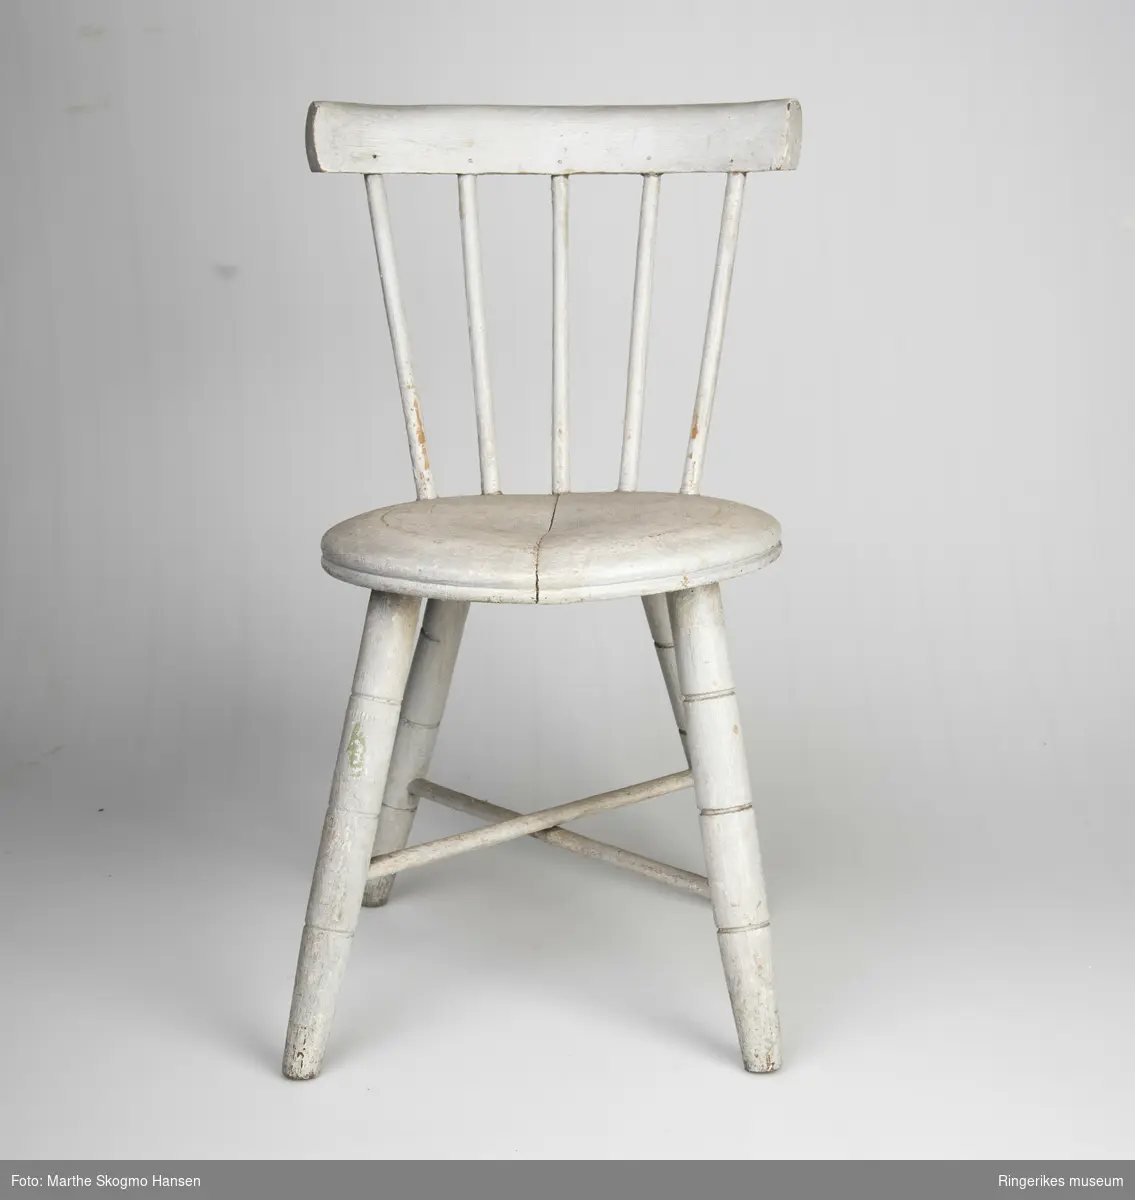 Stolen er veldig pent laget, den ser akkurat ut som en stol for voksne, bortsett fra størrelsen. Det er en typisk pinnestol, med rundt sete. Beina har tre dekorative furer hver, 8,5 cm, 16 cm og 22 cm opp fra gulvet. Det er to sarger i kryss. Ryggen består av 5 pinner på 20.5 cm og et smalt ryggbrett på toppen, 4,5 cm bredt. Stolen er malt lys grå, men fargen er slitt vekk noen steder, av og til ned til den hvite grunningen, andre ganger er det slitt ned til treverket.Det er en sprekk på tvers av setet, men ellers er stolen i god stand.